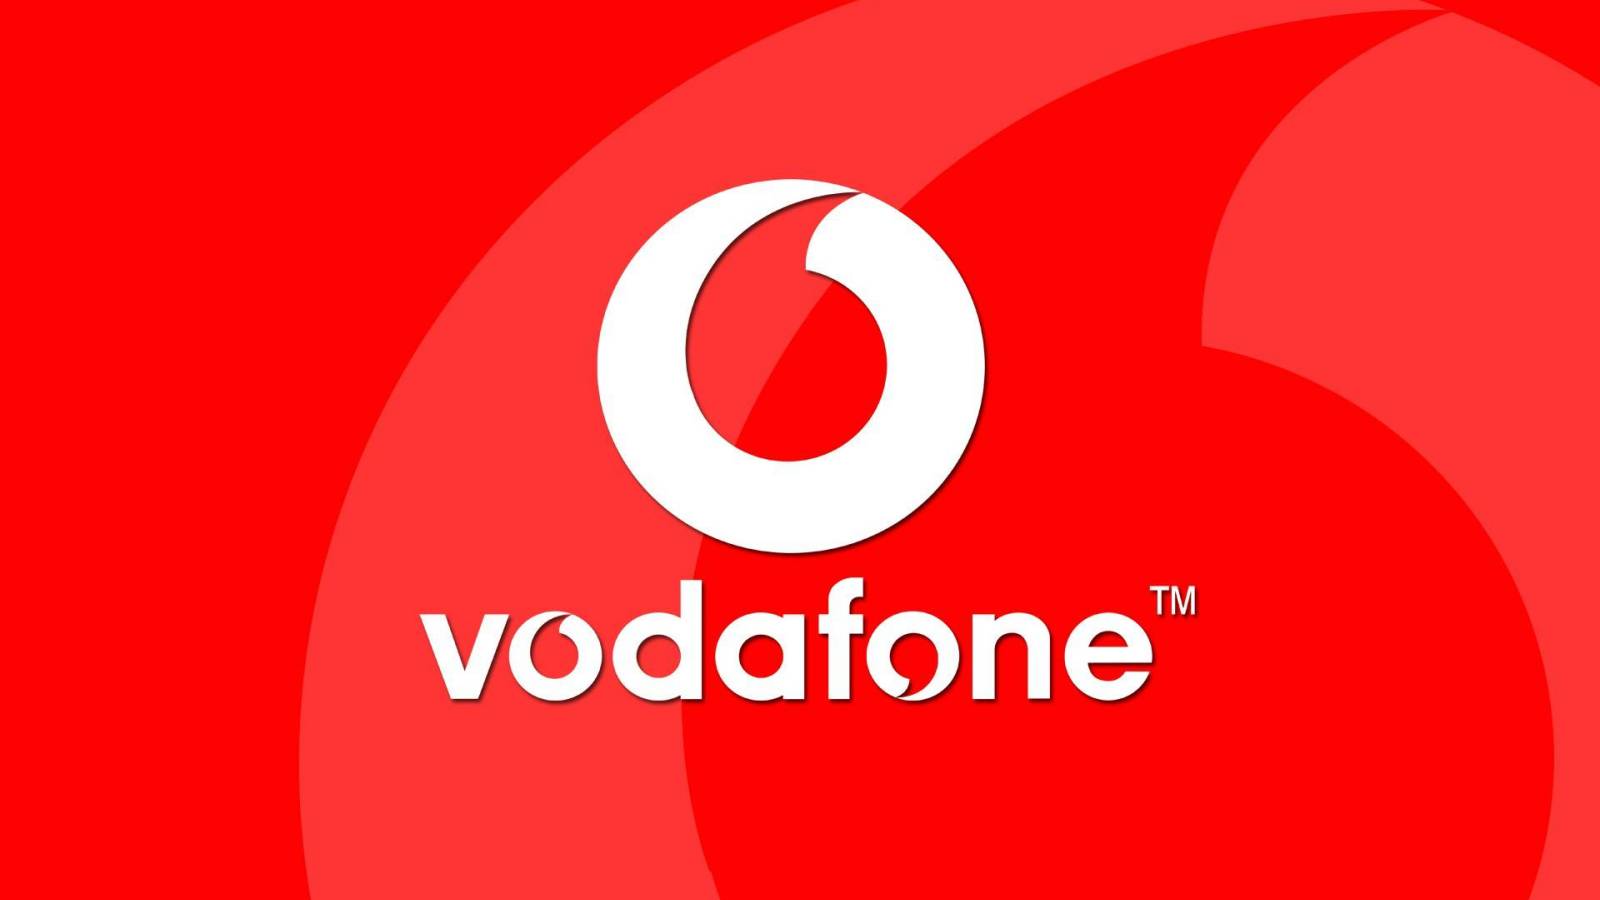 Vodafone lanserar digitala lösningar för lantbruket